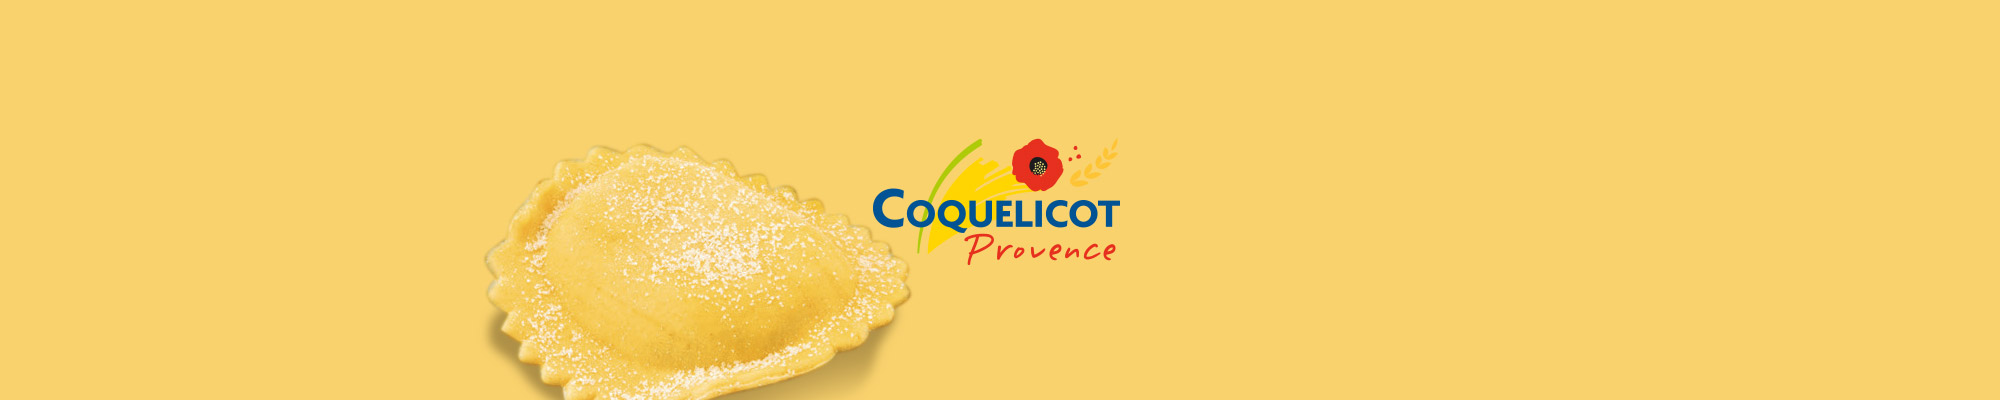 Coquelicot Provence